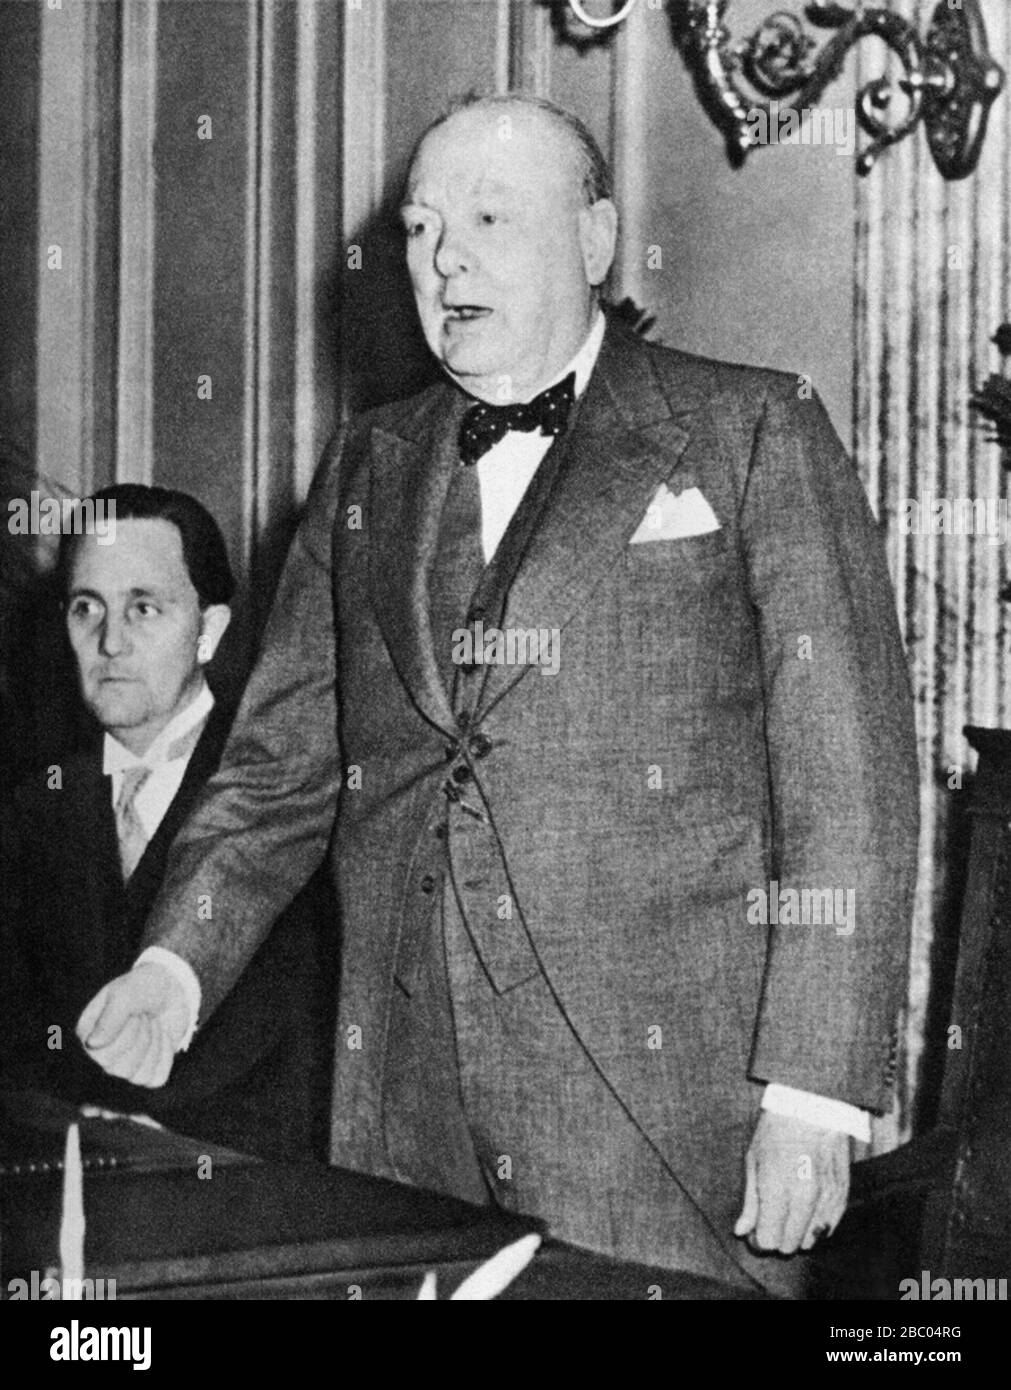 Winston Churchill prononcera un discours sur la liberté de la ville de Luxembourg. 15 juillet 1946. Banque D'Images